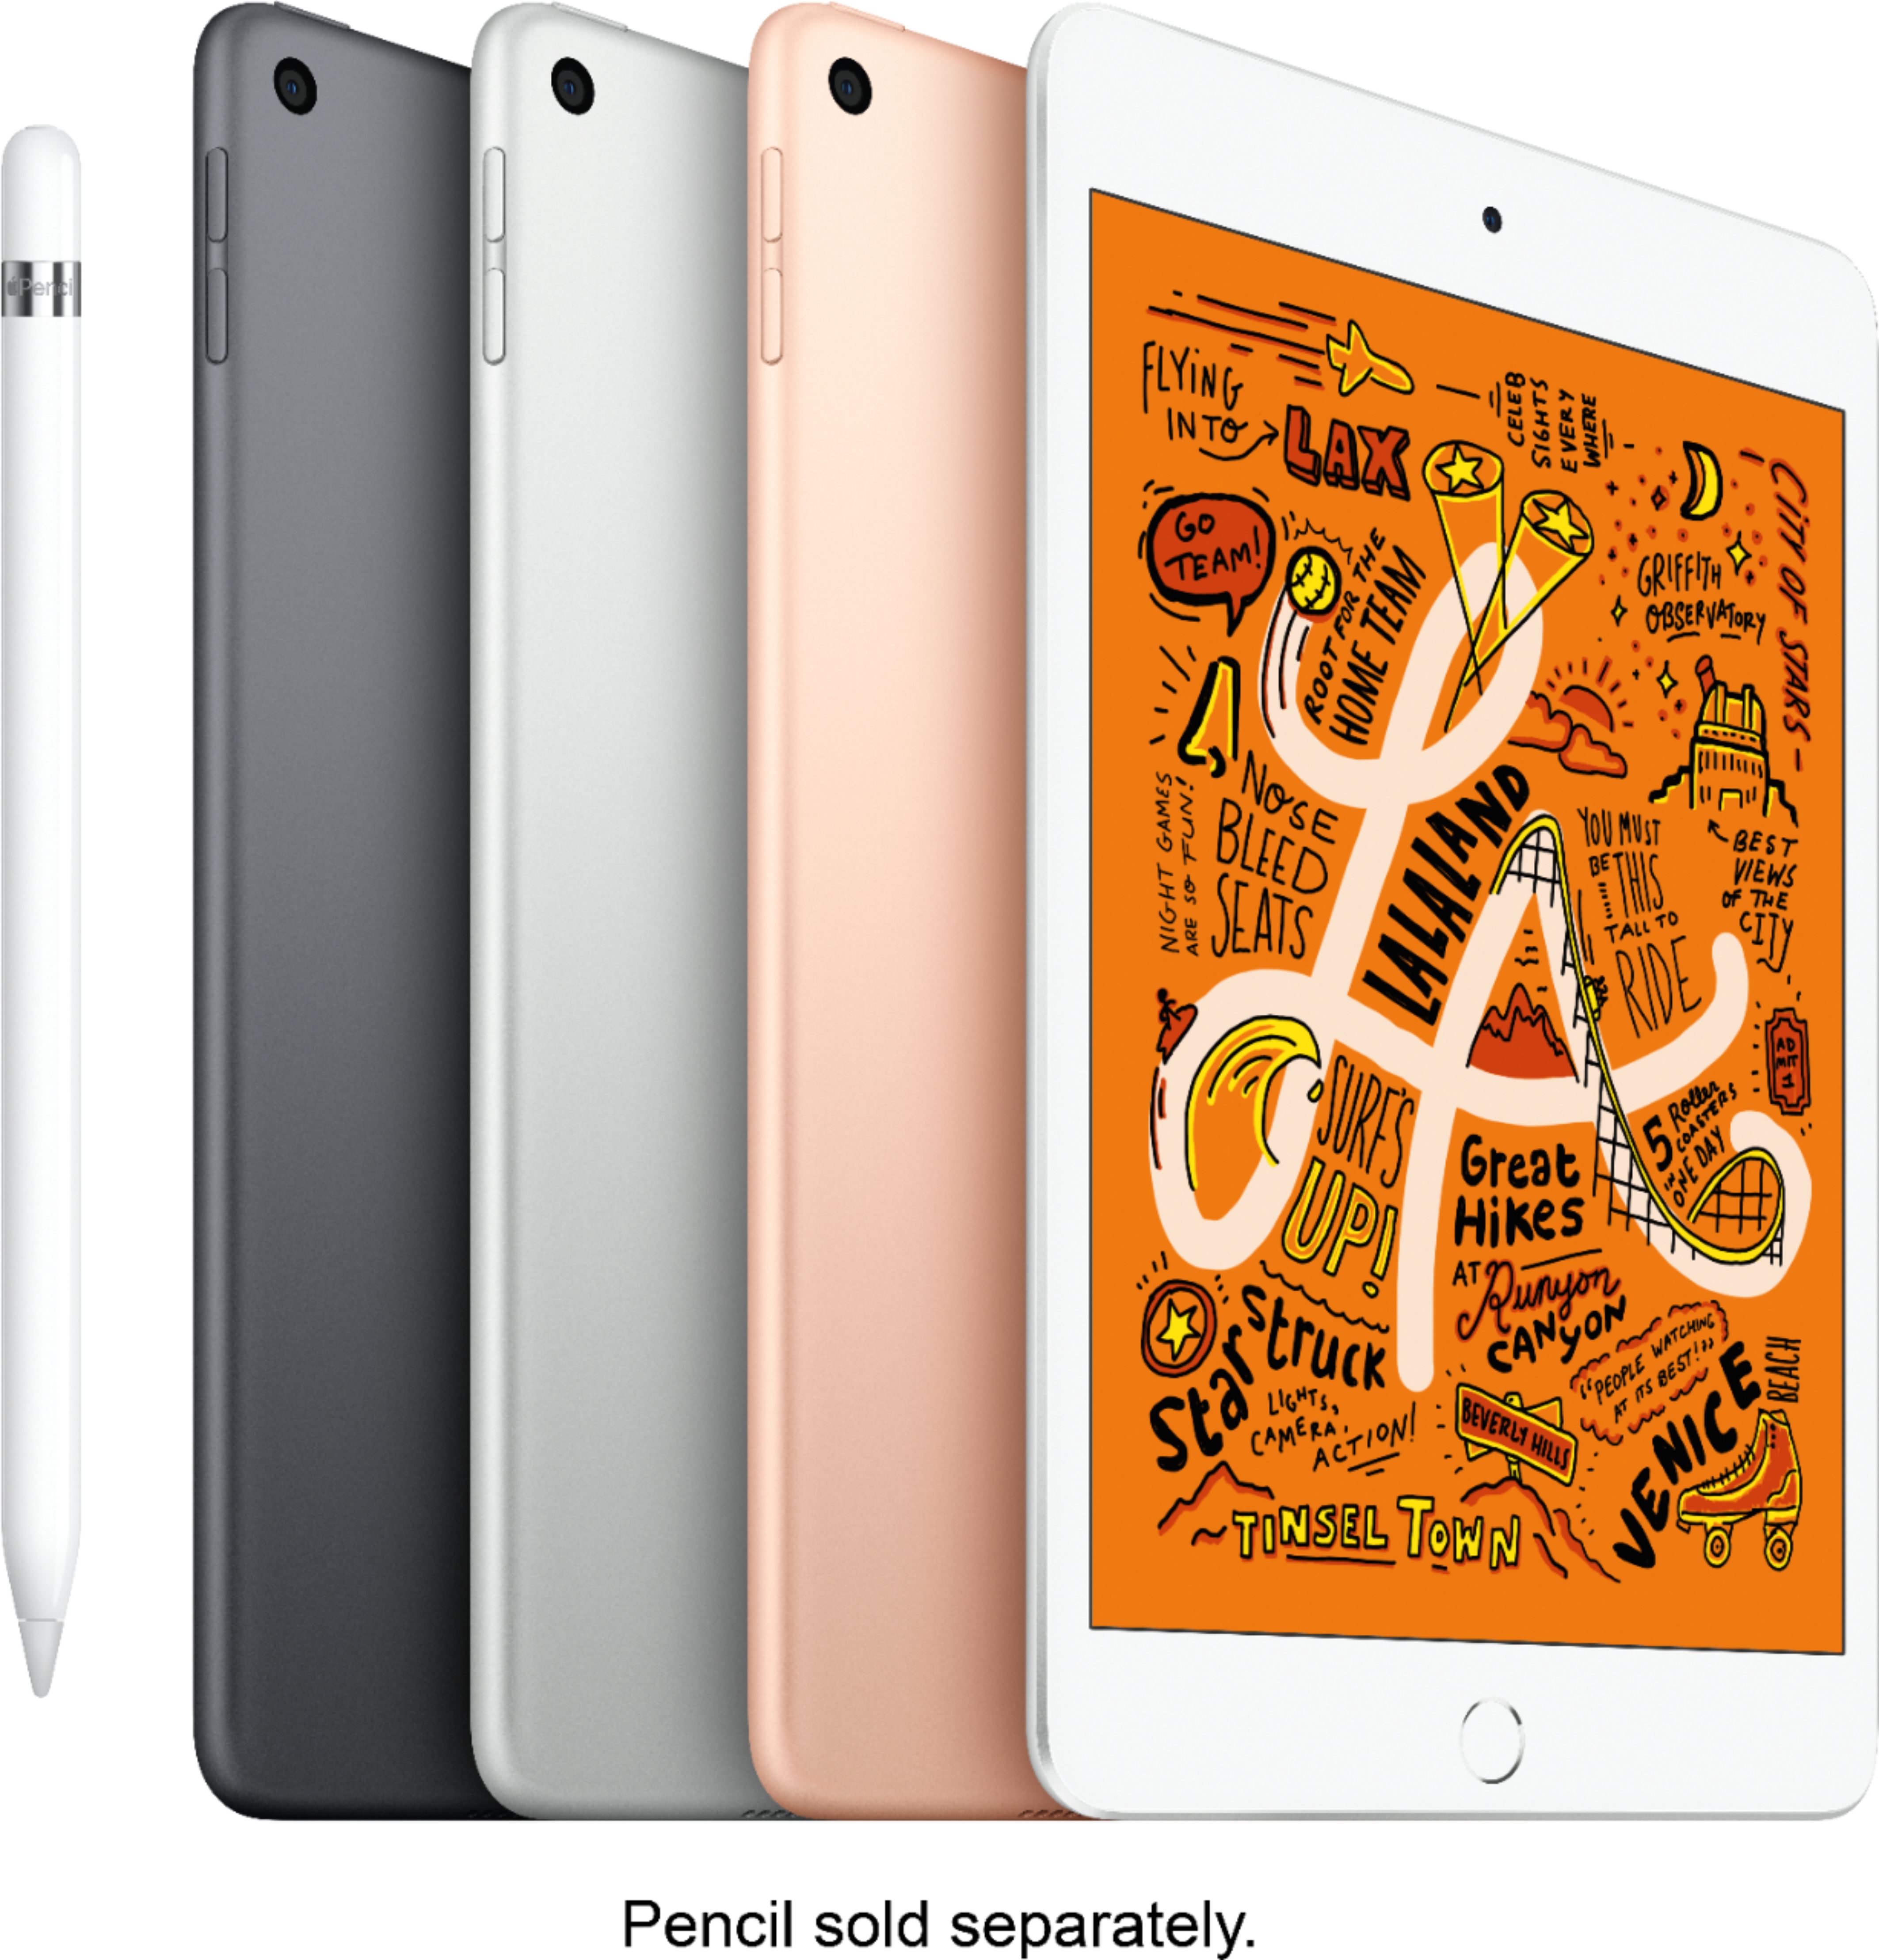 大人気ブランド通販 APPLE iPad 5スペースグレイ mini タブレット